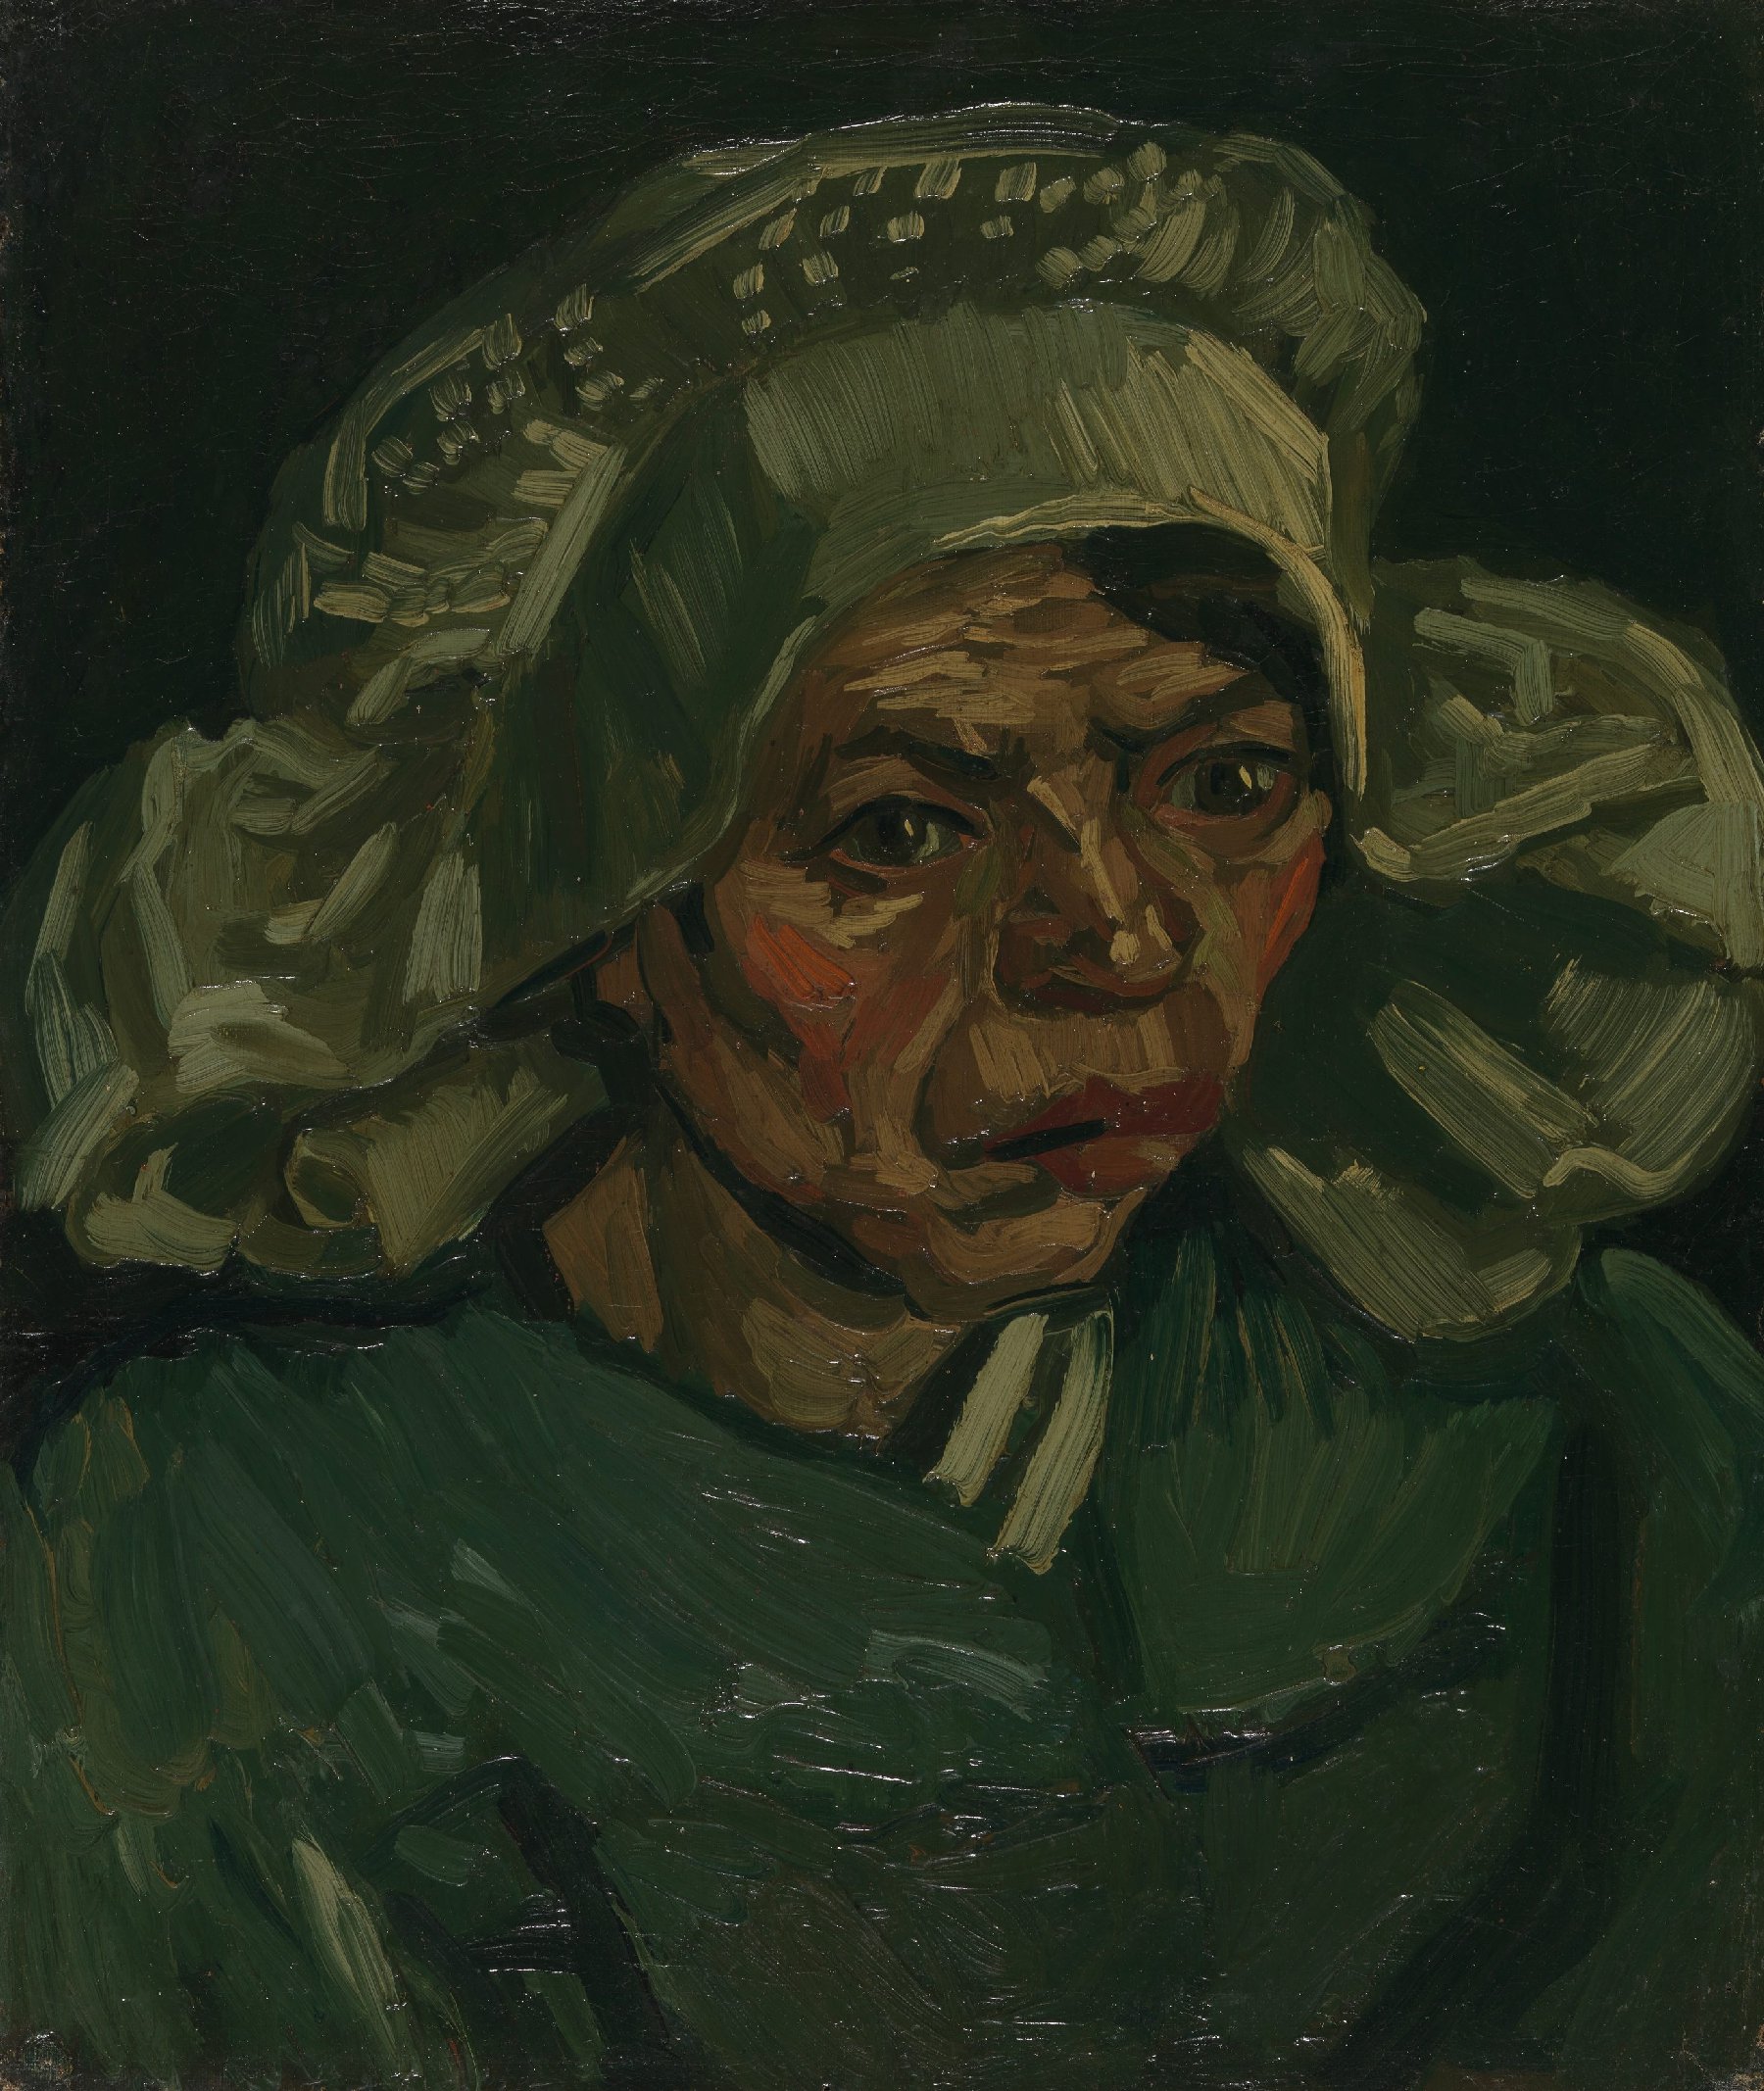 Kop van een vrouw Vincent van Gogh (1853 - 1890), Nuenen, mei 1885